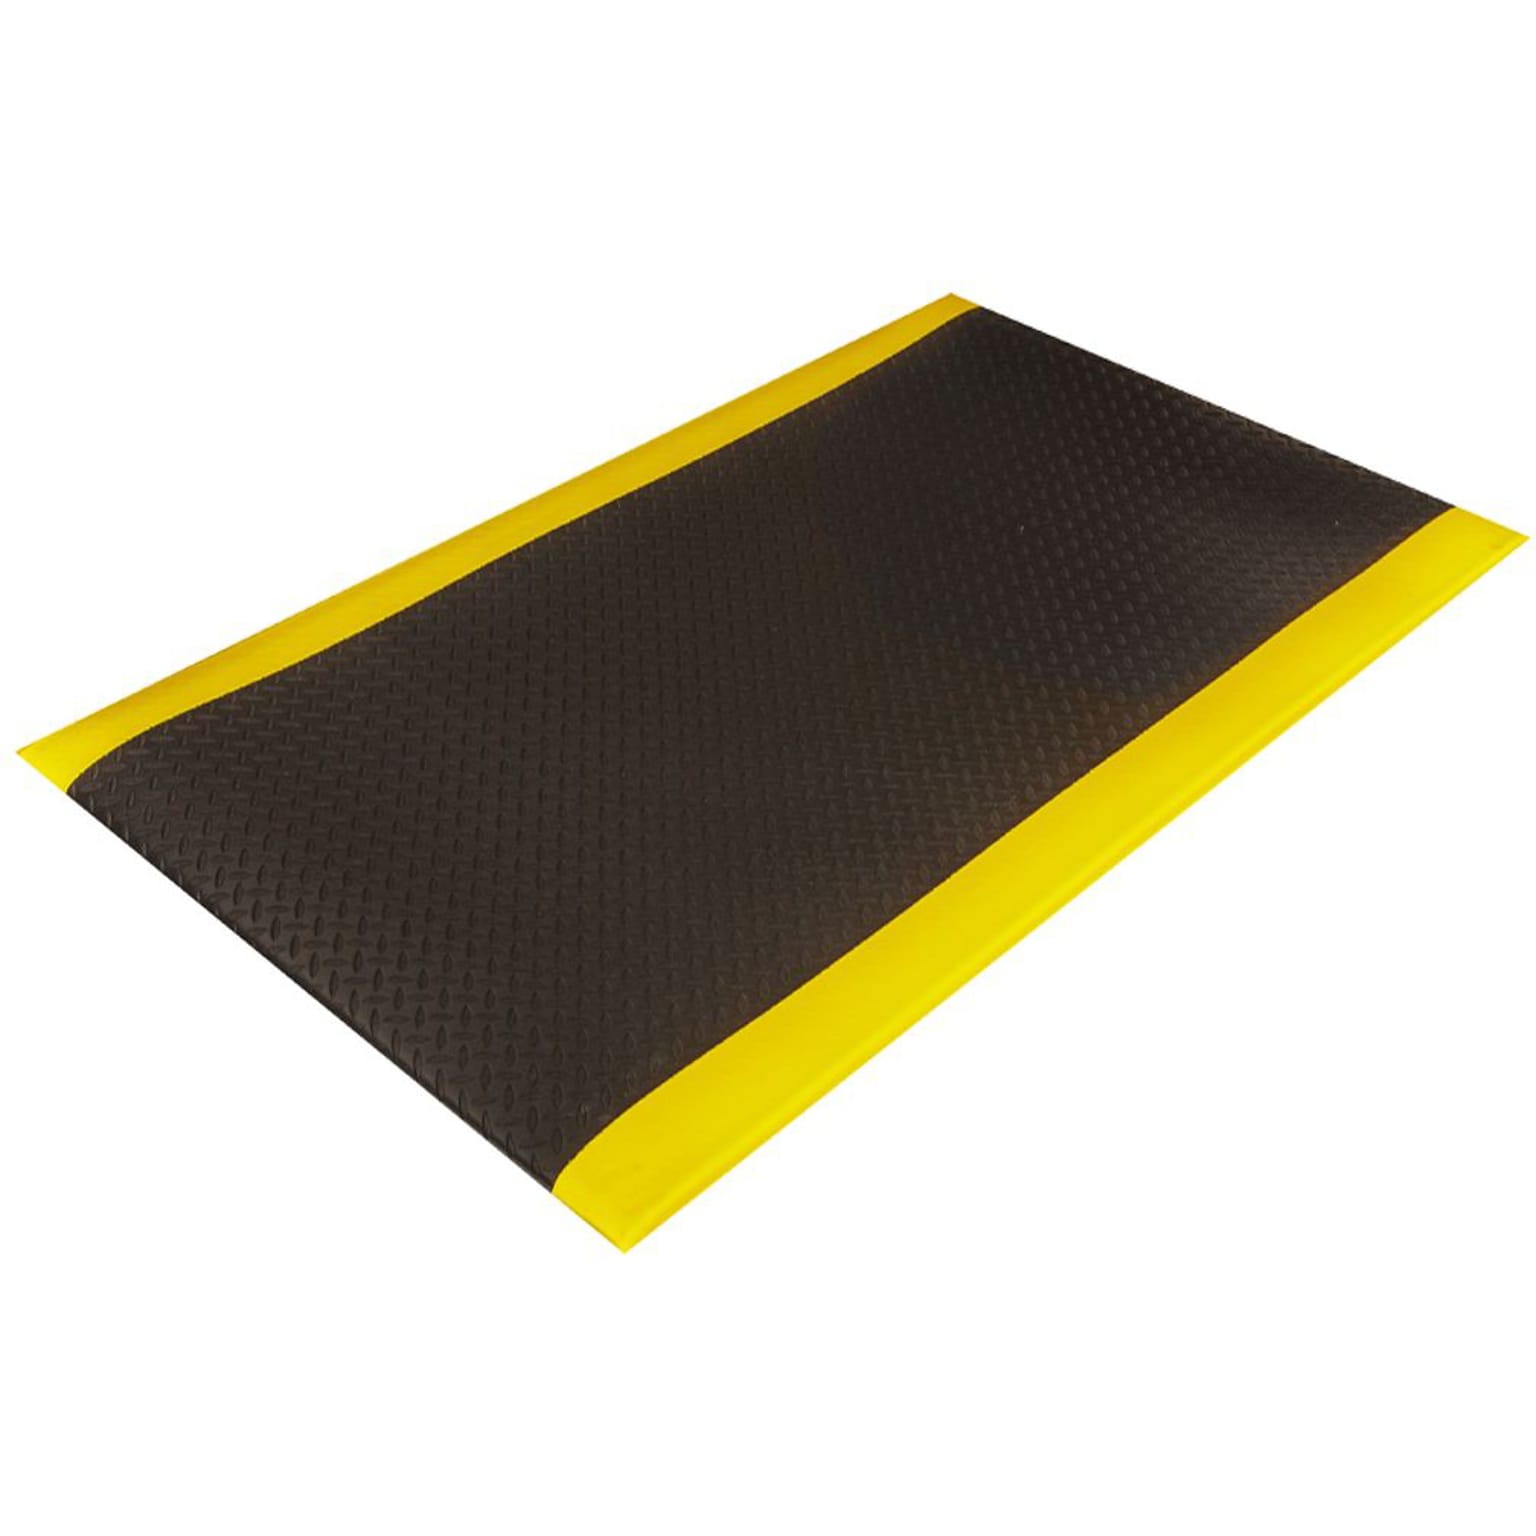 Crown Mats Wear-Bond Tuff-Spun Anti-Fatigue Mat, 36 x 144, Black/Yellow (WB 0312YD)